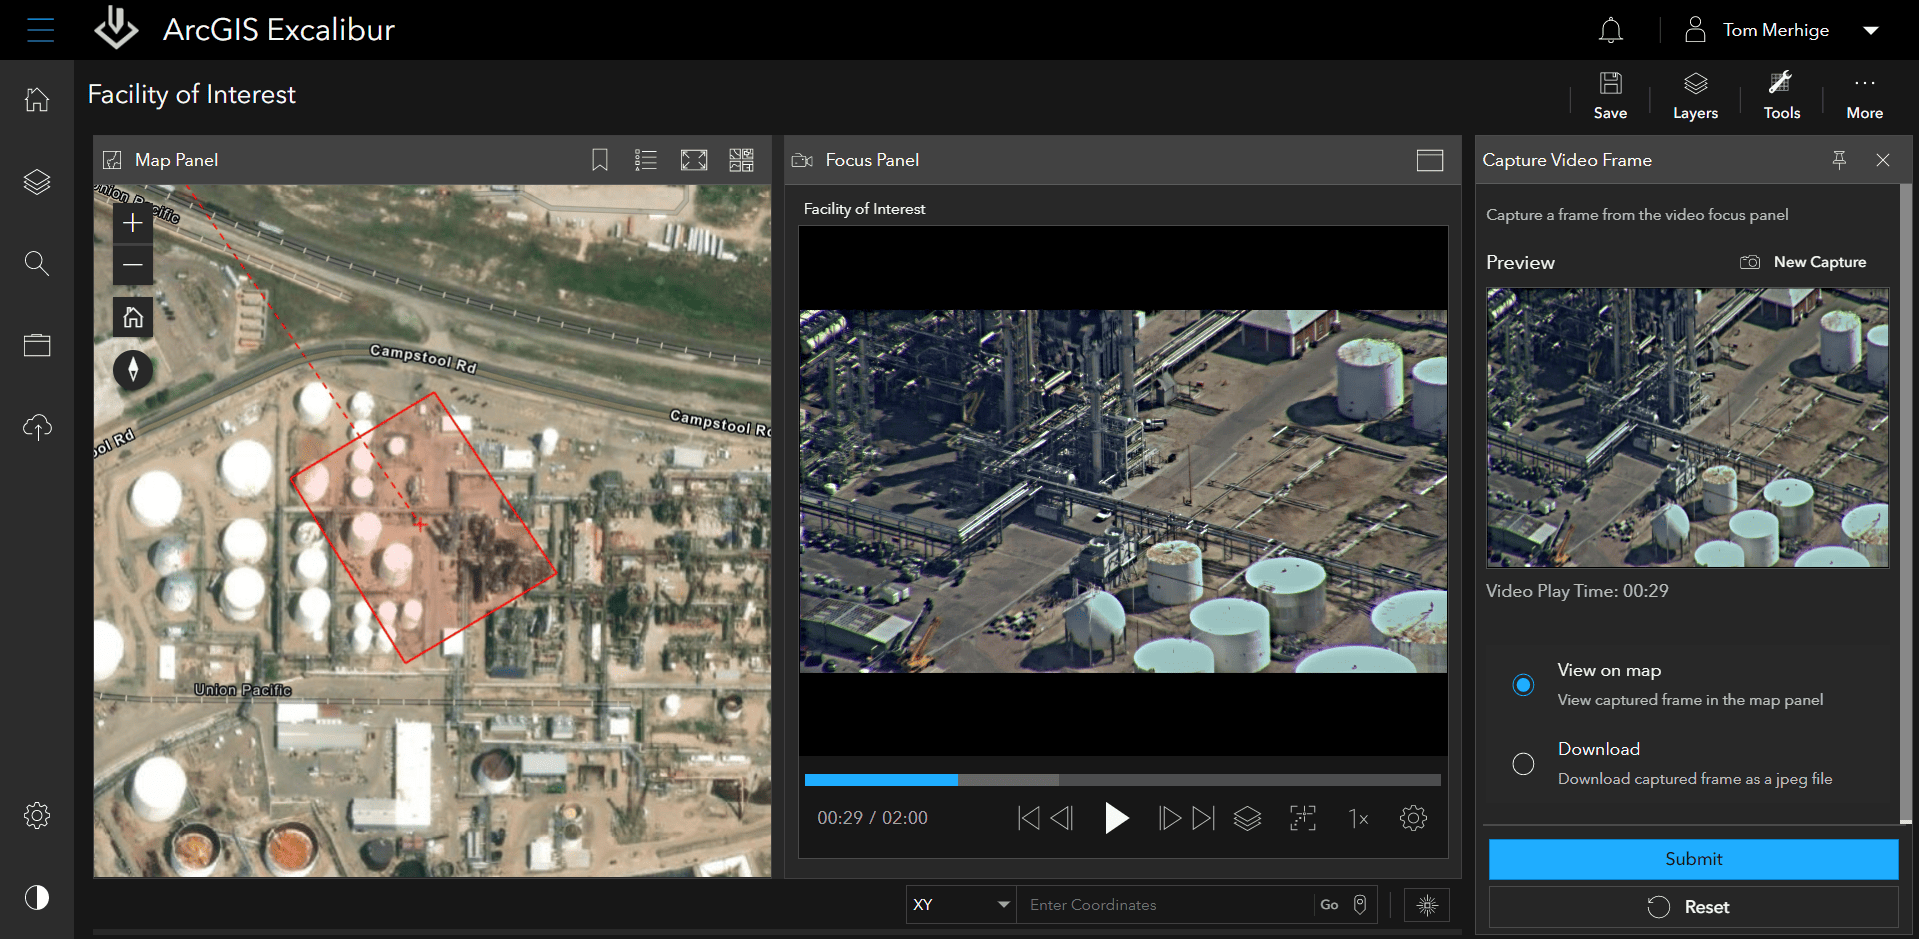 Video Server Capture Frame Tool